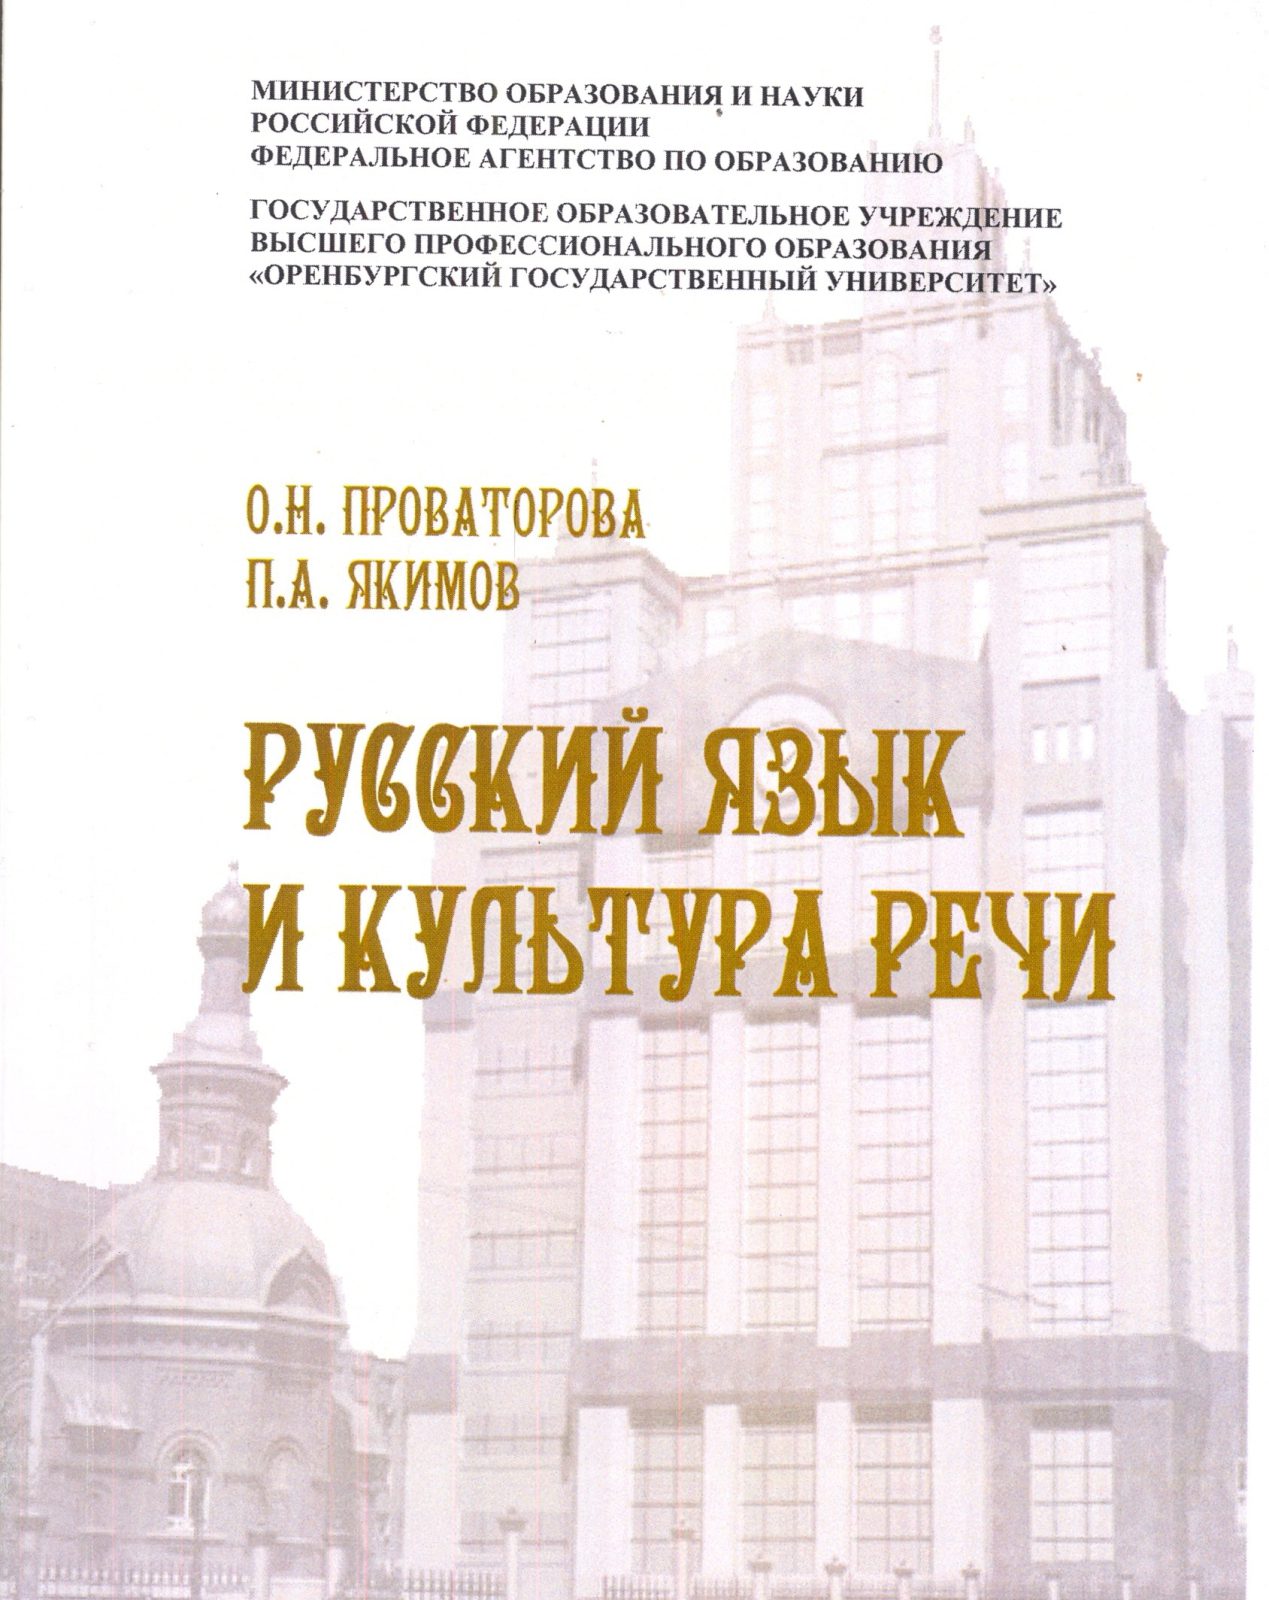 Преподаватель Оренбургской Духовной Семинарии выпустил учебное пособие